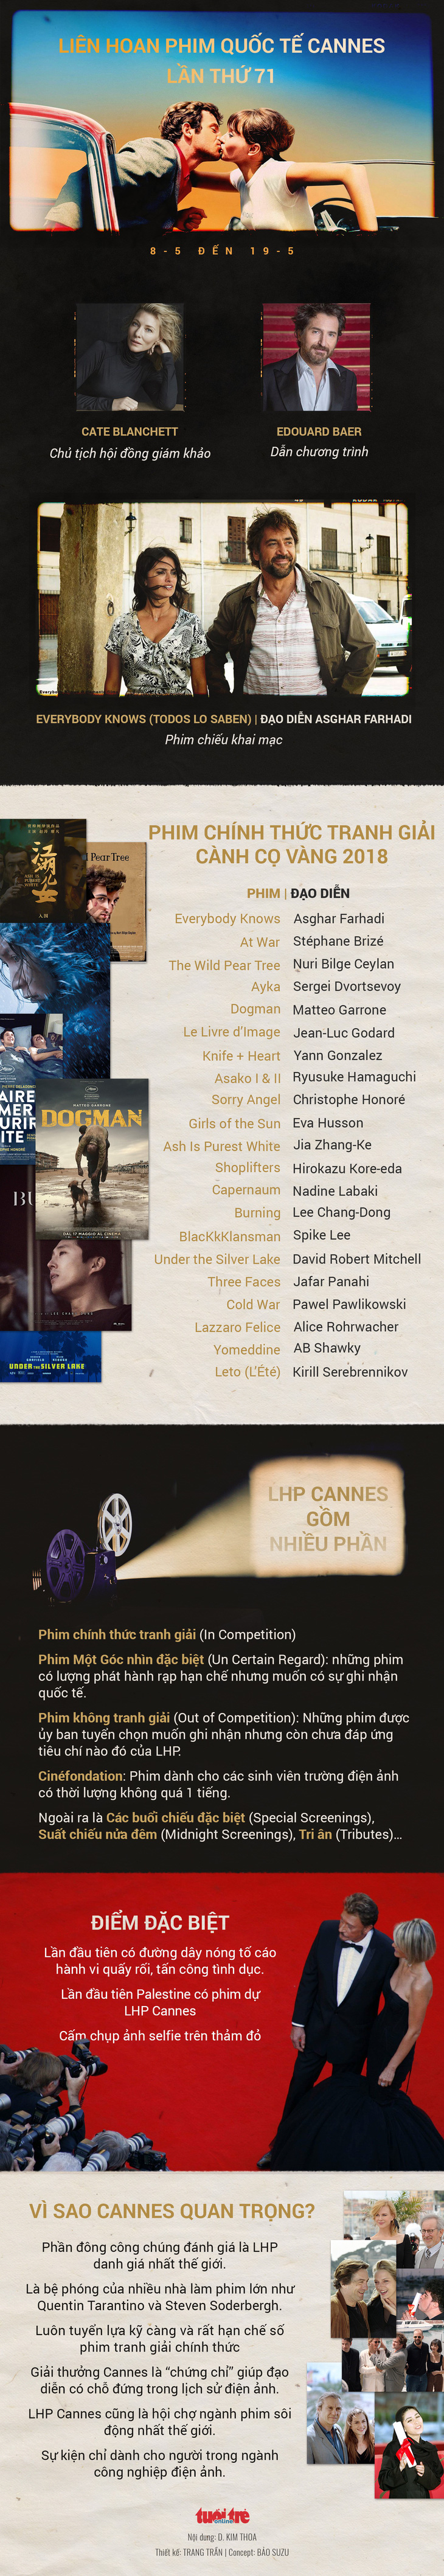 Cành Cọ Vàng 24 carat và 71 bộ nữ trang cho Cannes lần thứ 71 - Ảnh 11.